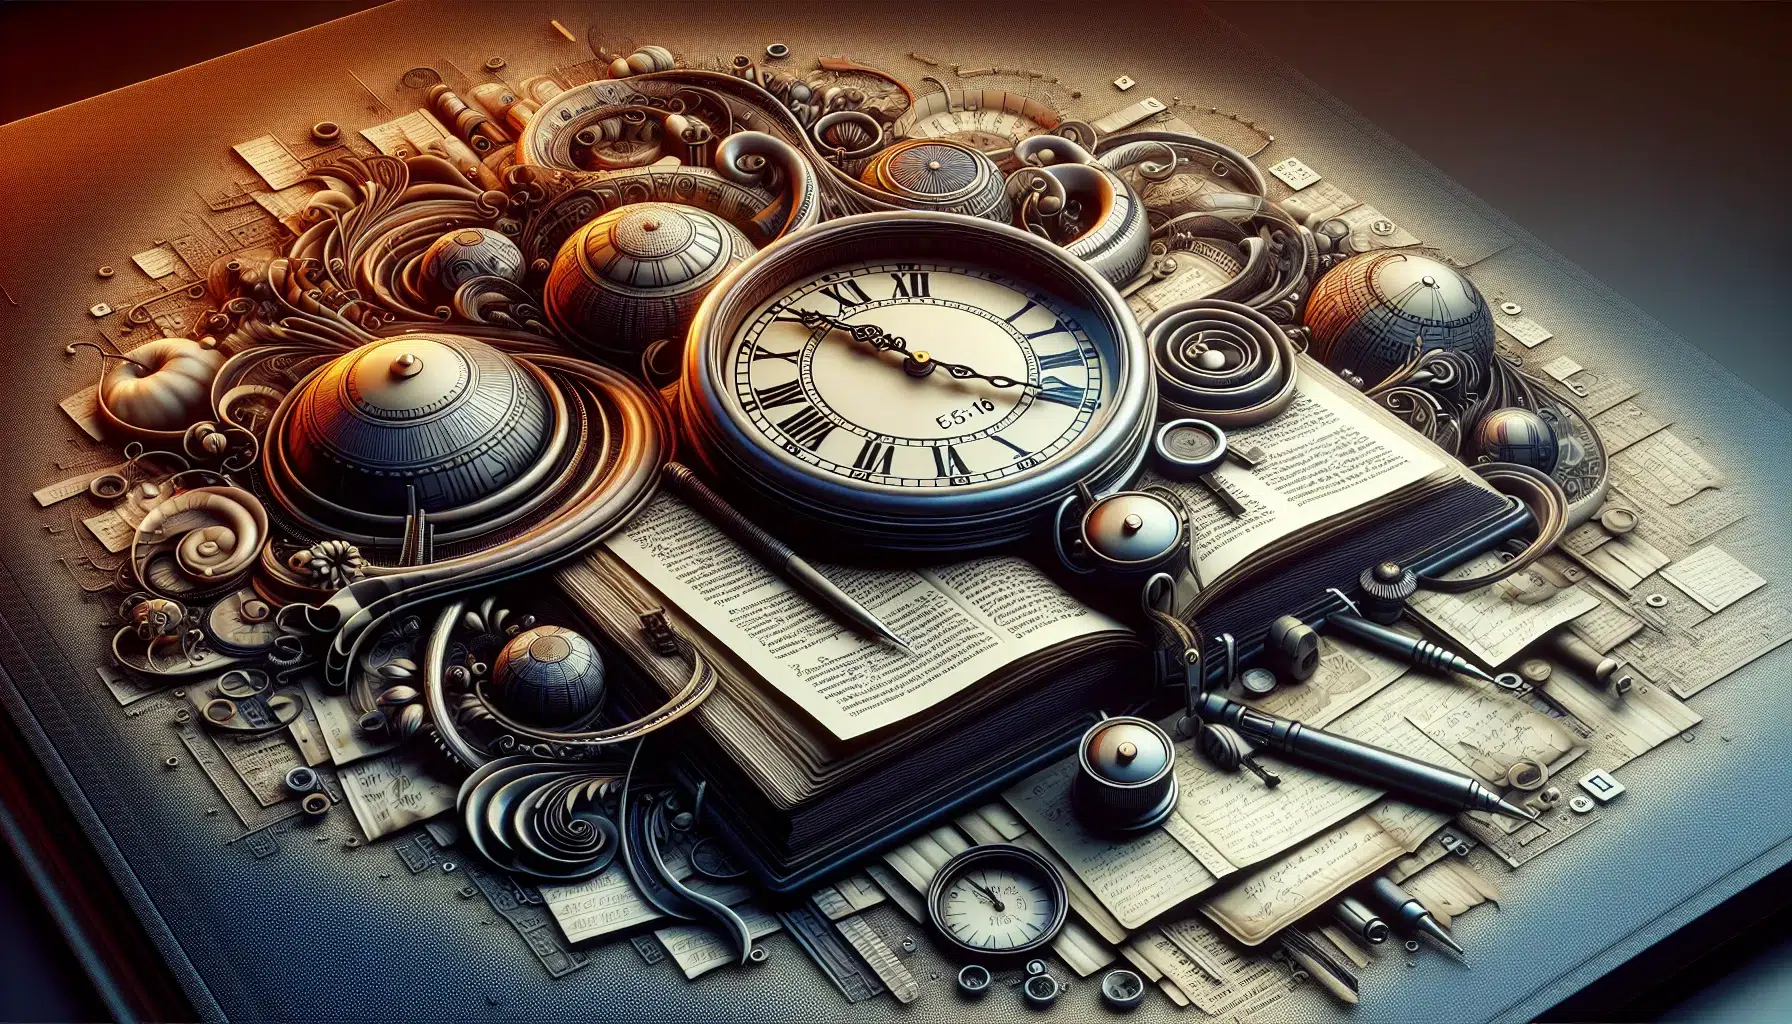 Imagen de un reloj con la cita bíblica de Efesios 5:16 como inspiración para reflexionar sobre el uso del tiempo.